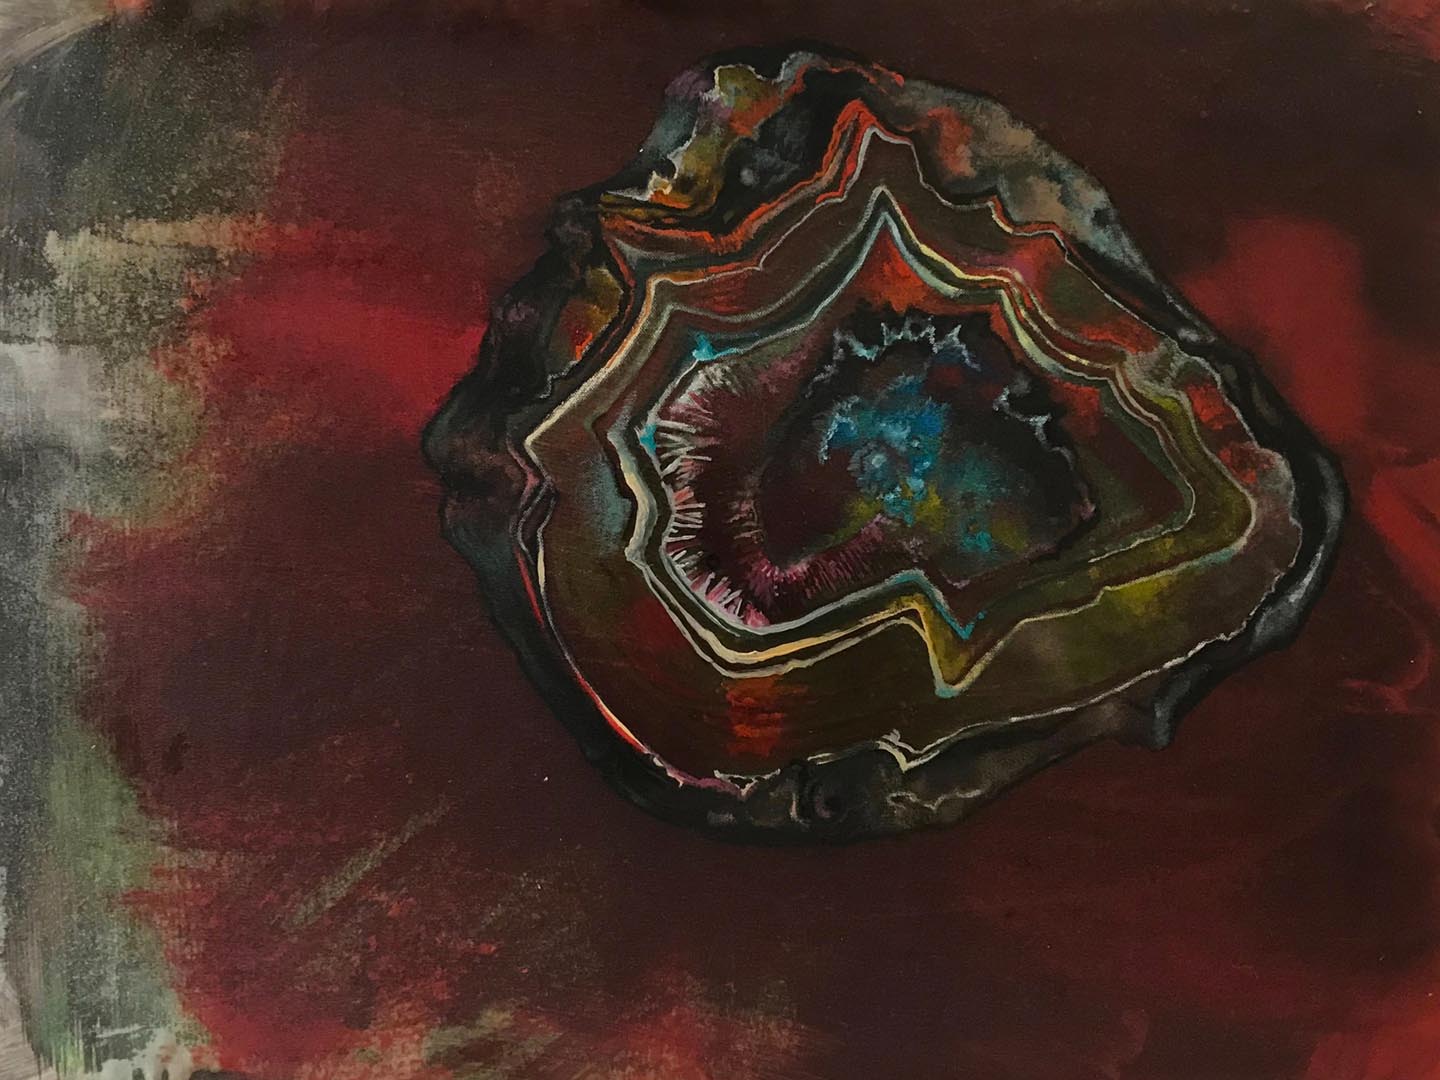 Ellen Wiener, Mars Agate, 6 x 8”, encaustic on panel, 2018